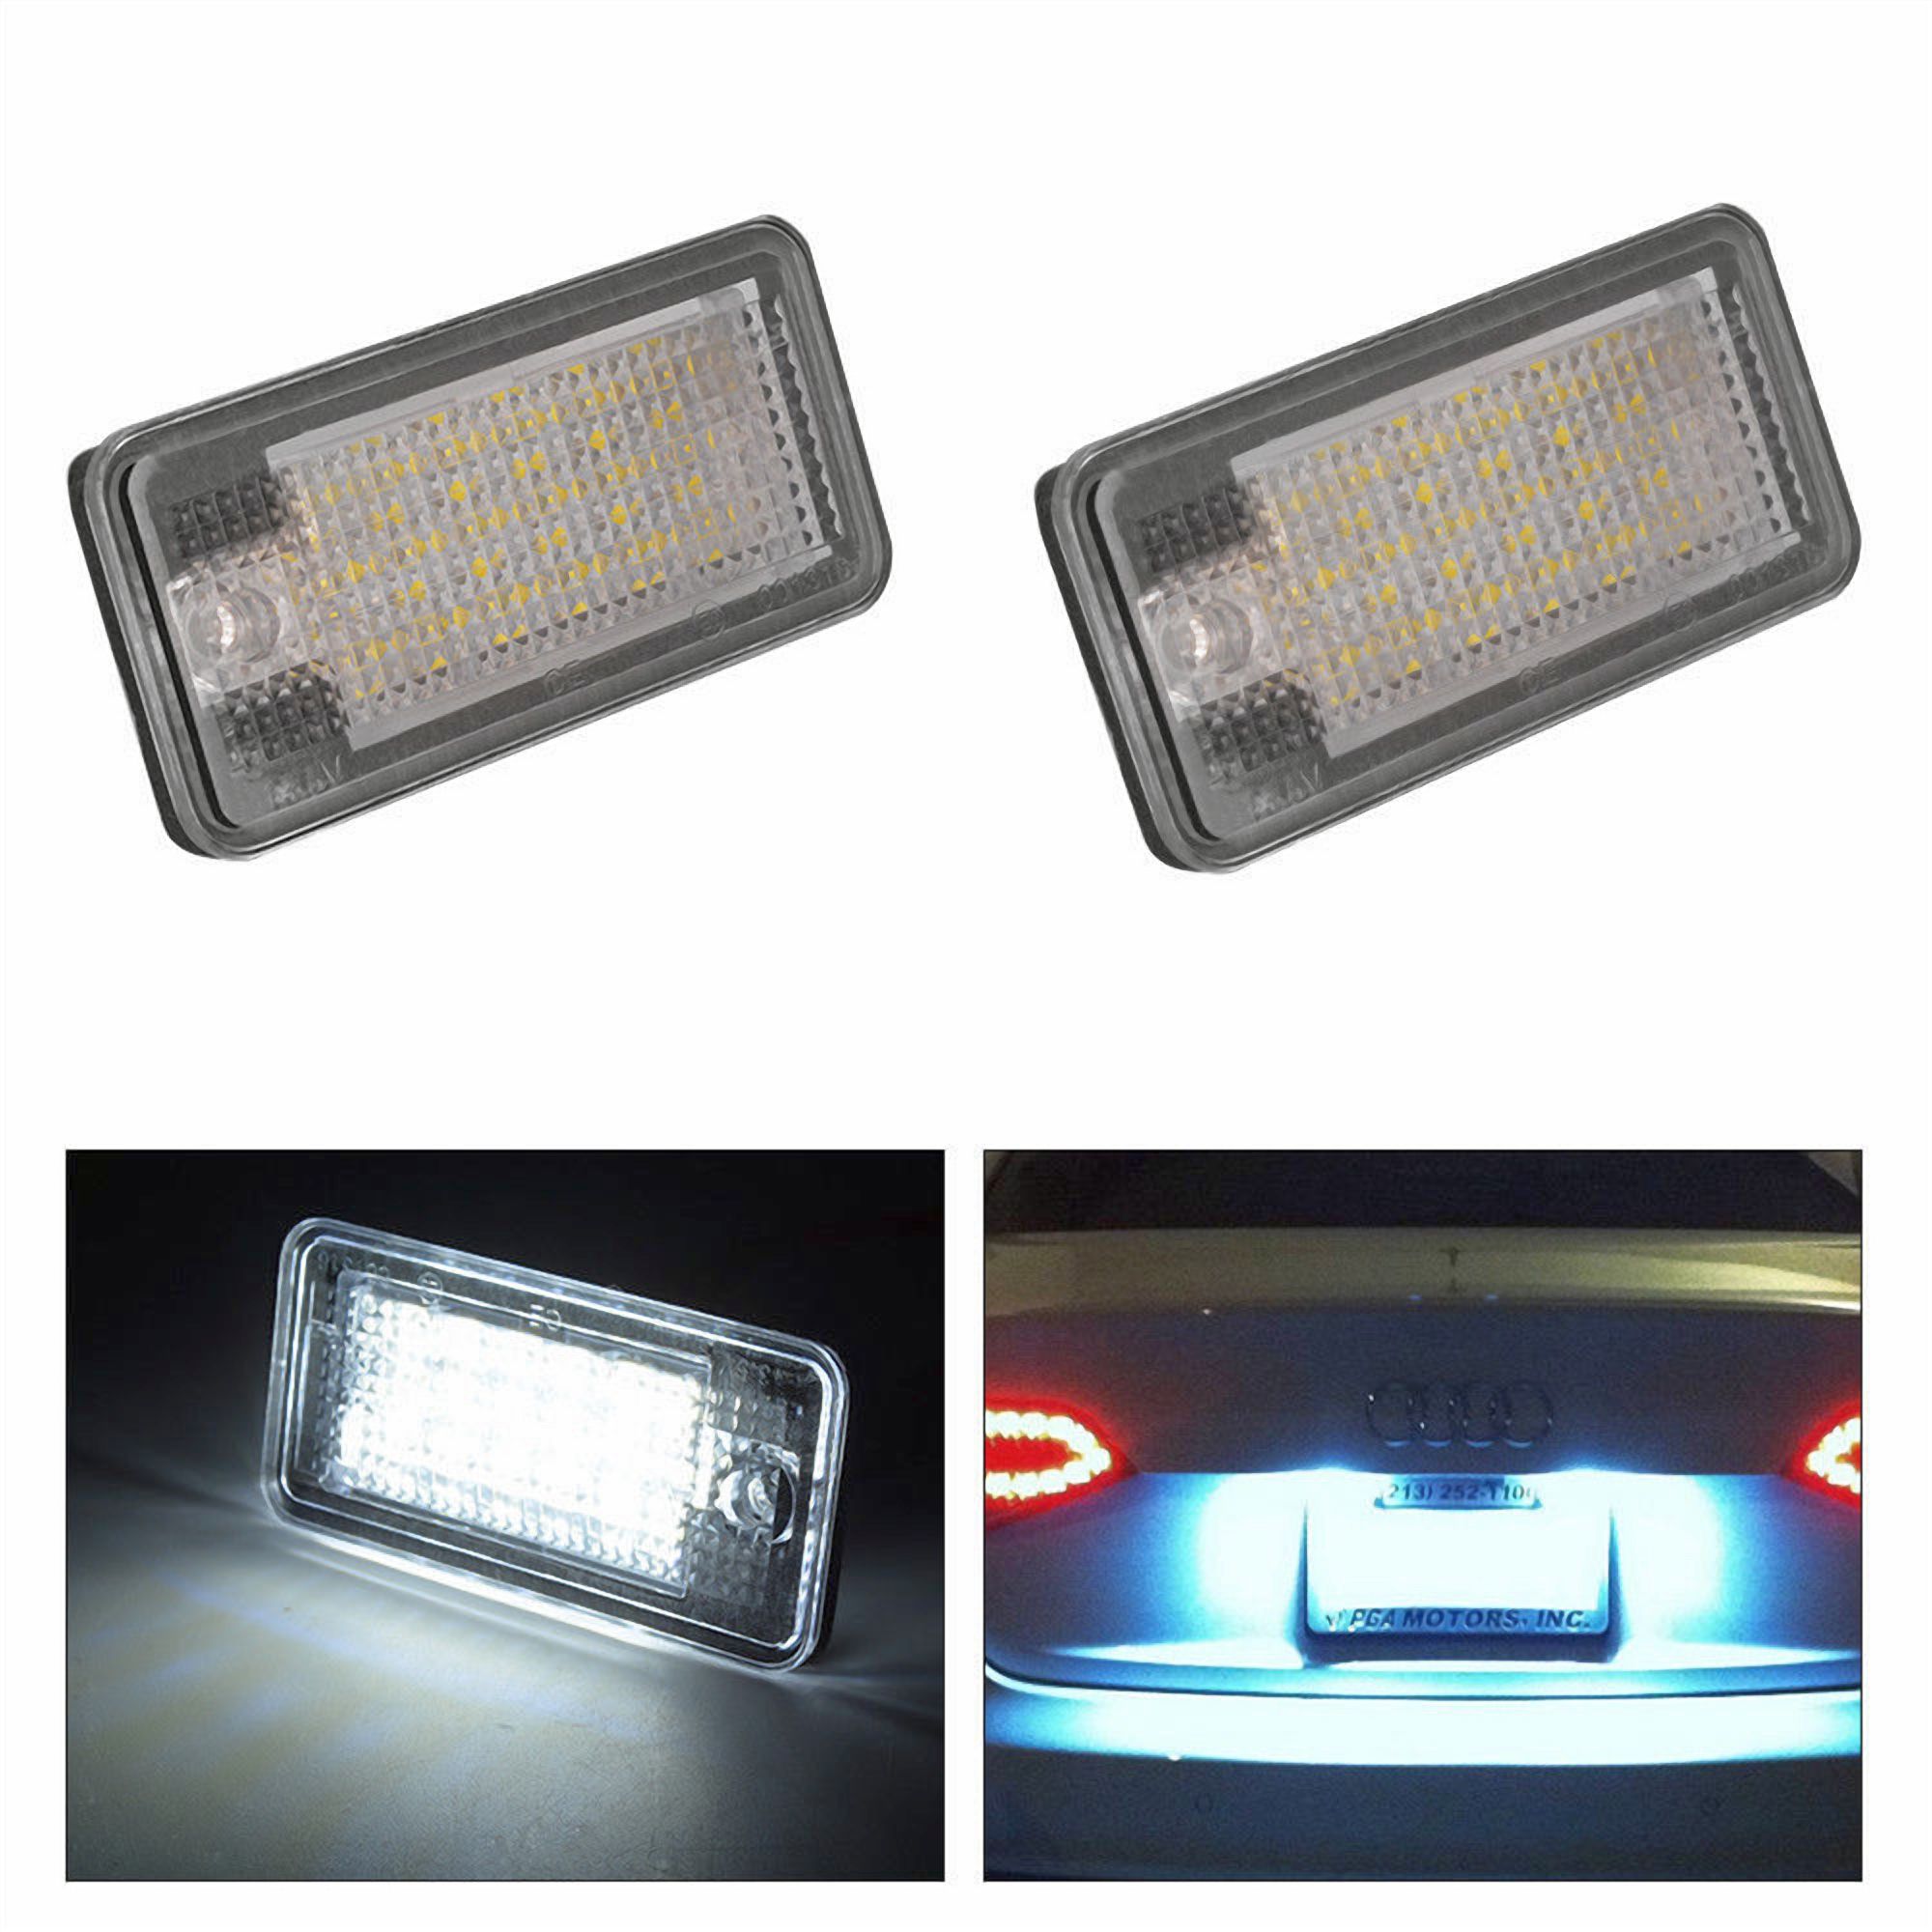 LED Kennzeichenbeleuchtung Audi Version 1, 60.22 CHF